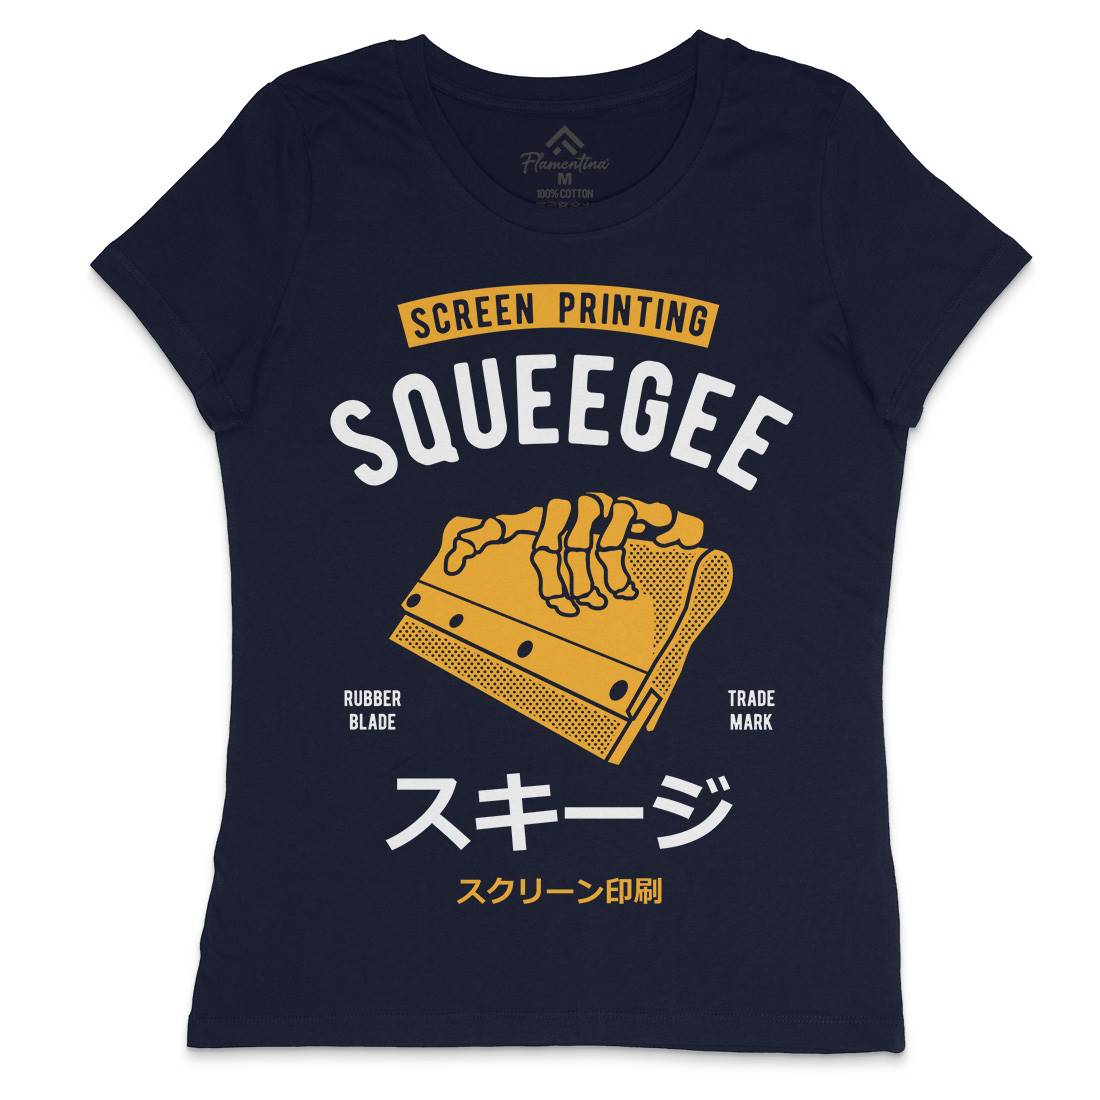 Squeegee Social Club Womens Crew Neck T-Shirt Work A282